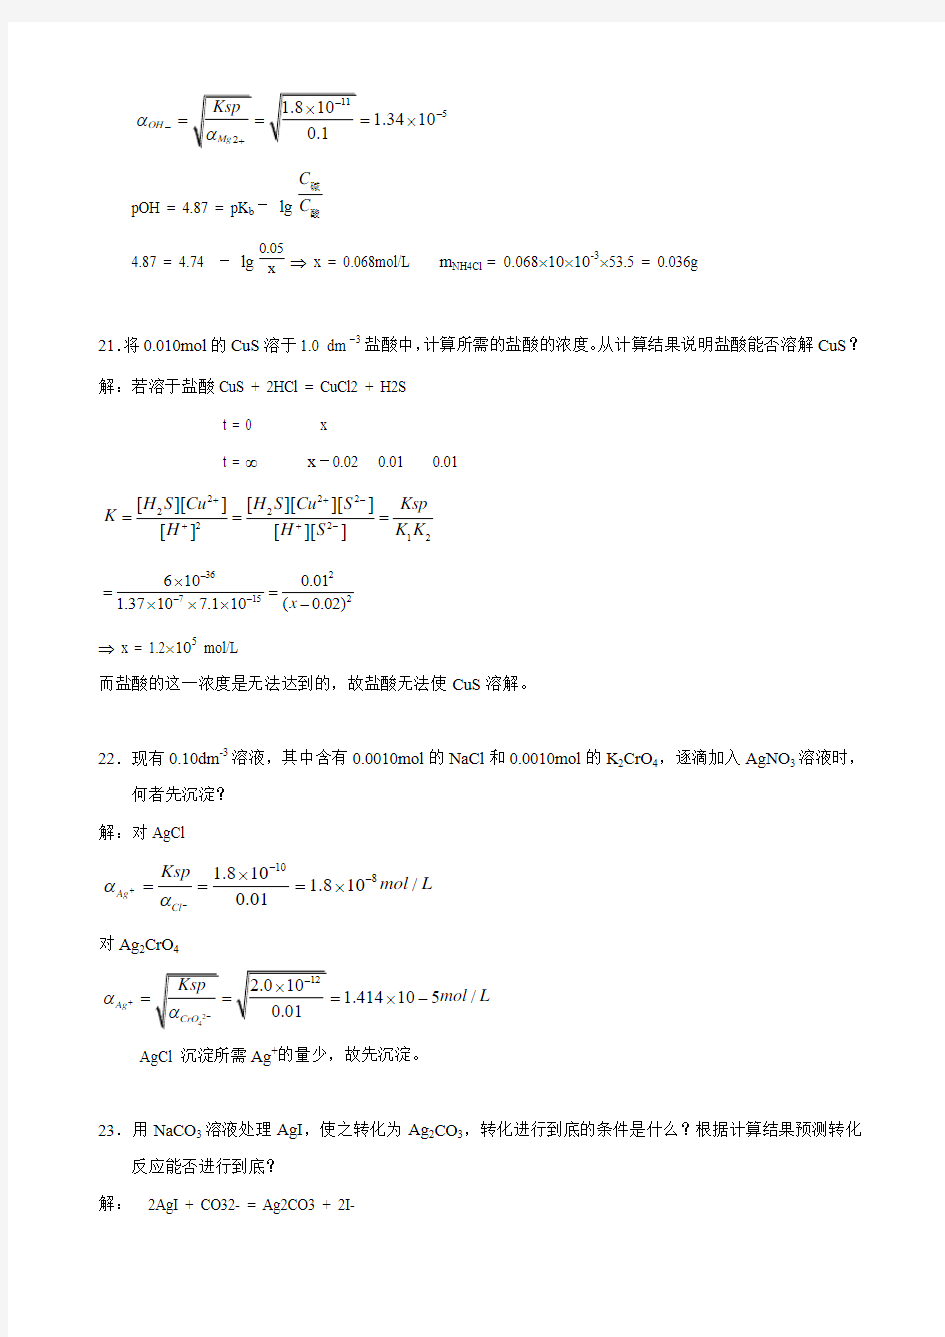 武汉大学版无机化学课后习题答案(第三版)第07章 难溶性强电解质及沉淀-溶解平衡